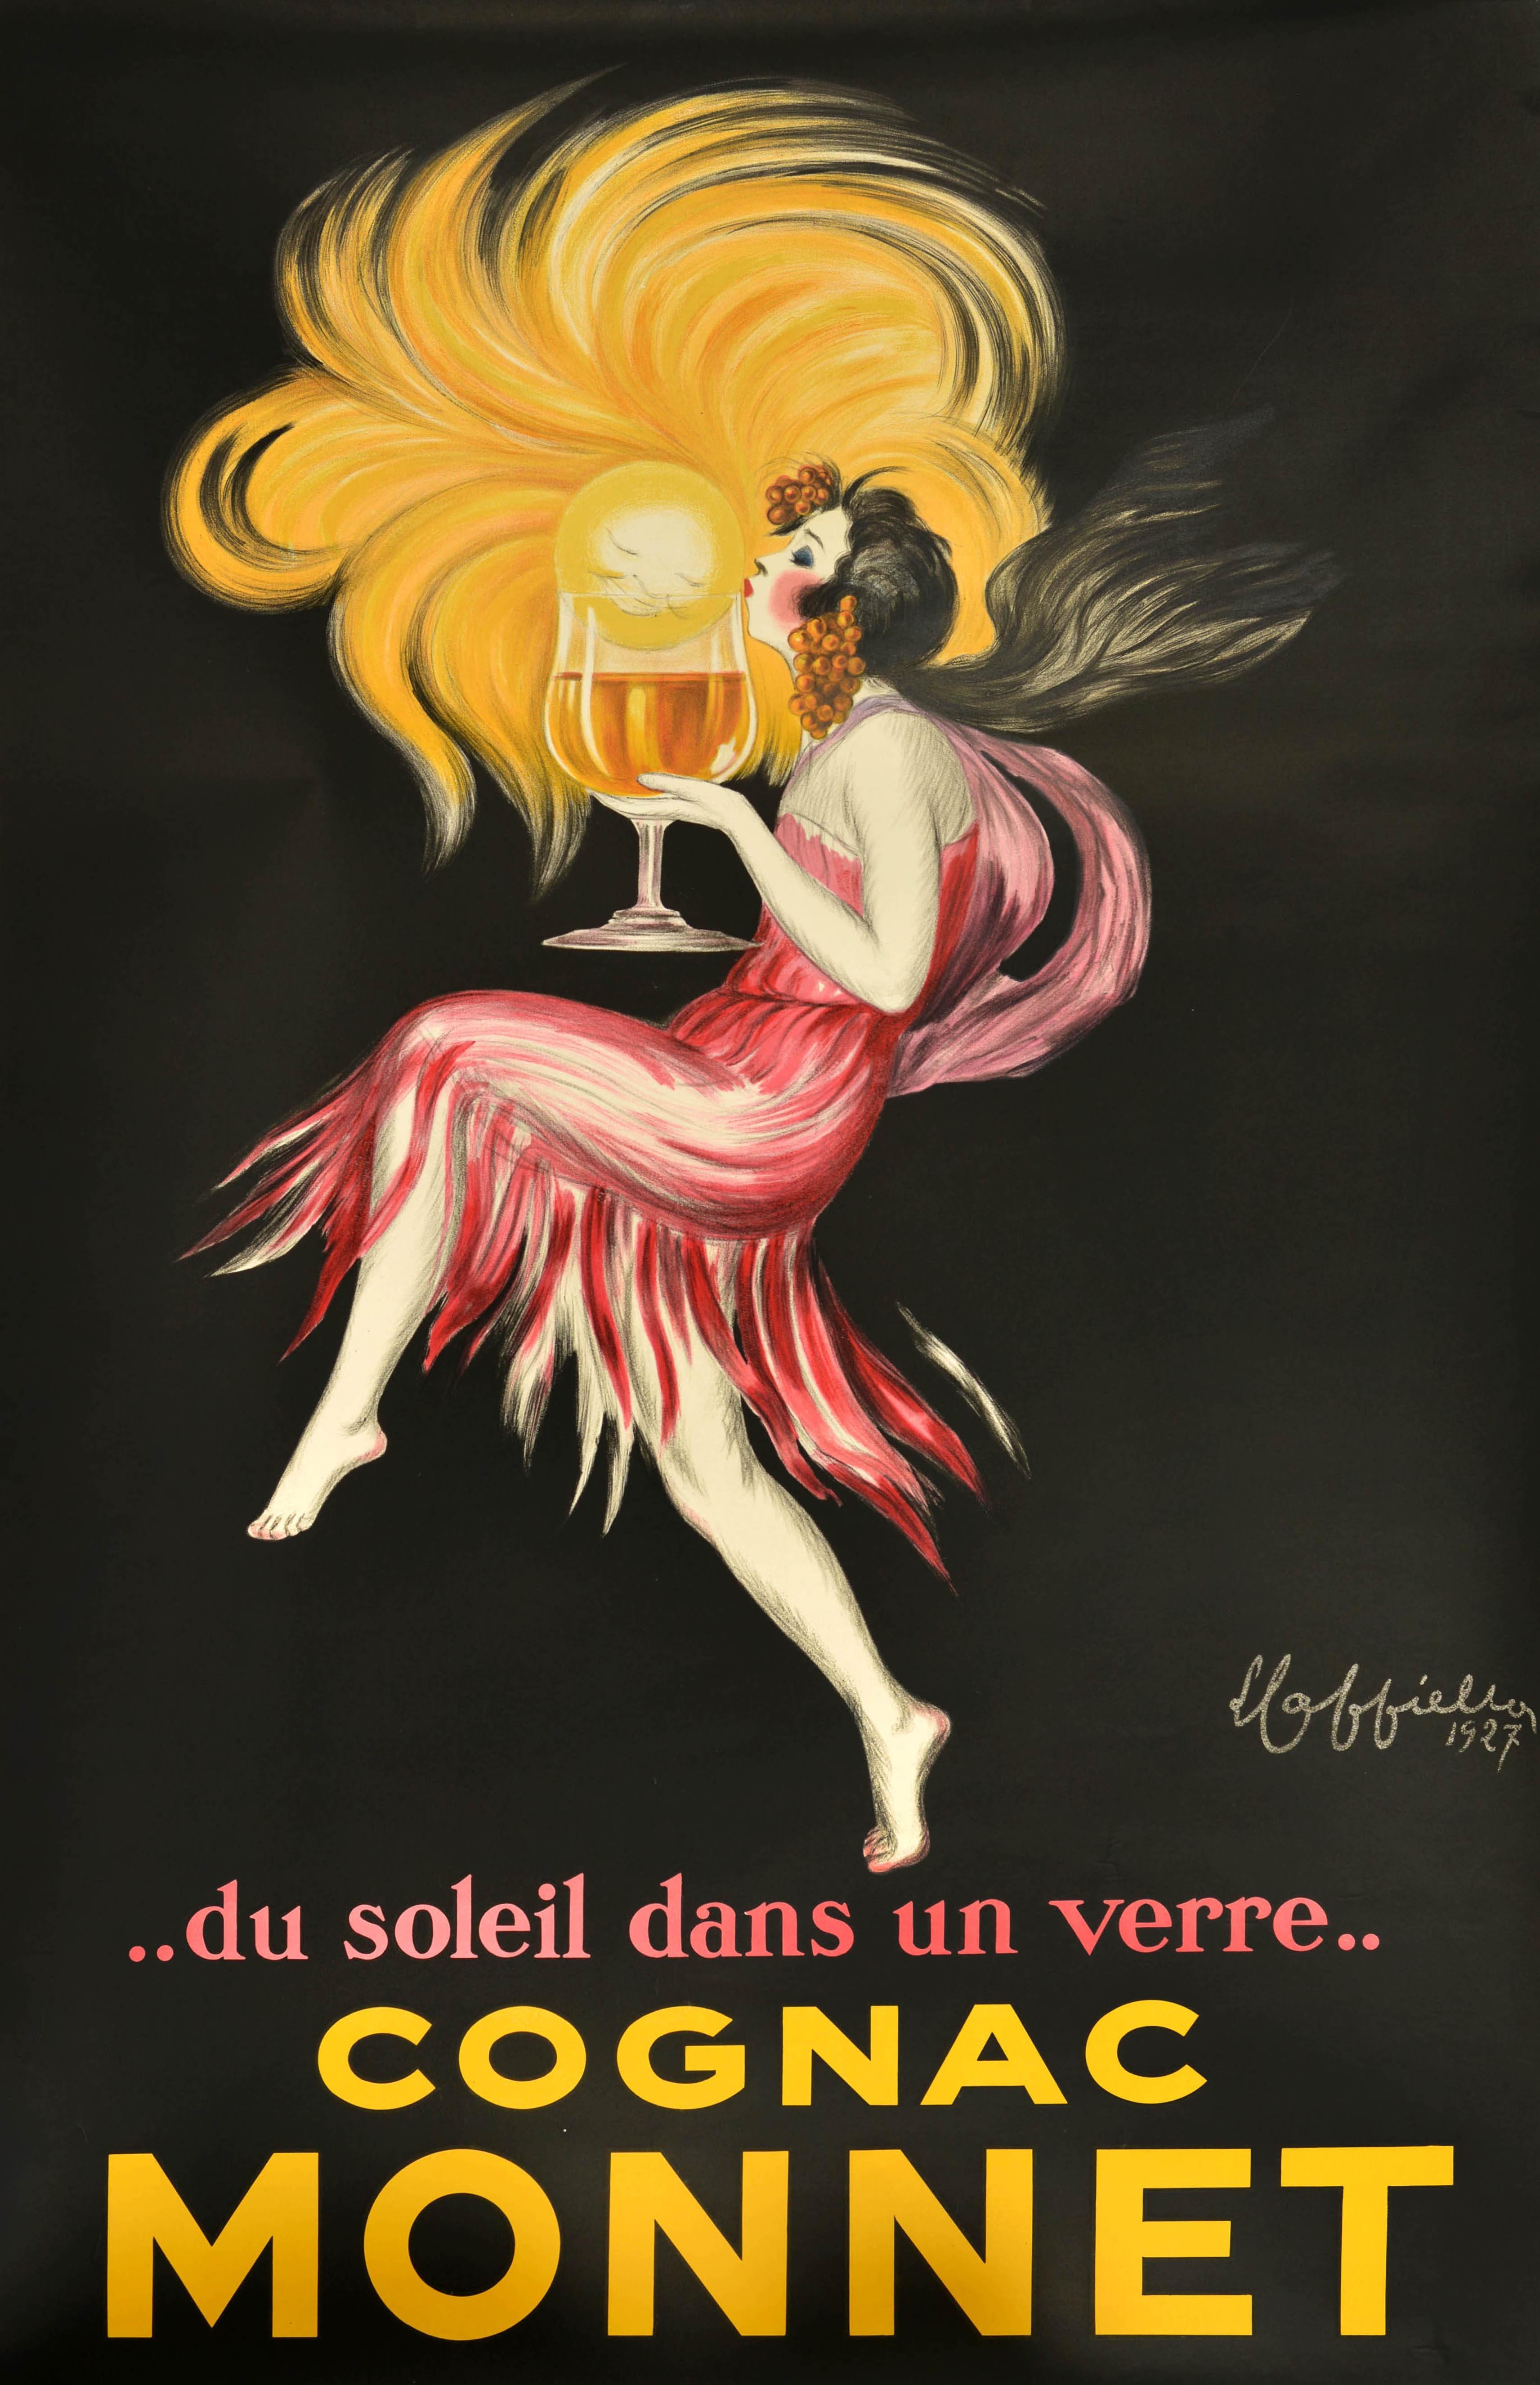 Affiche publicitaire originale pour les boissons Cognac Monnet Leonetto Cappiello en vente 1